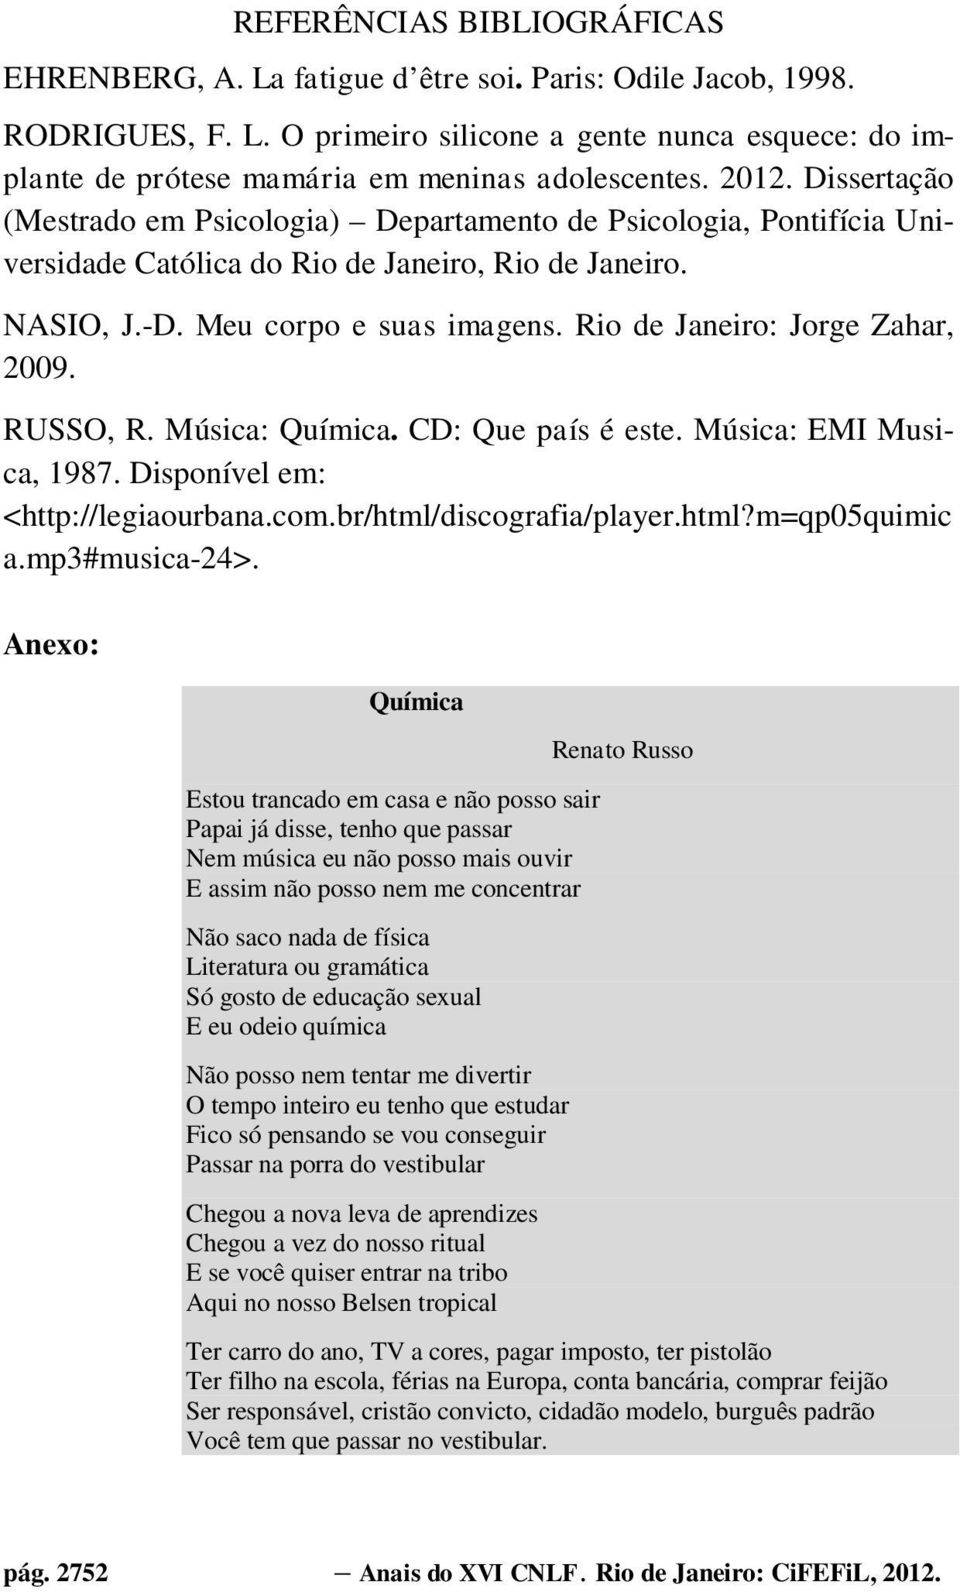 Rio de Janeiro: Jorge Zahar, 2009. RUSSO, R. Música: Química. CD: Que país é este. Música: EMI Musica, 1987. Disponível em: <http://legiaourbana.com.br/html/discografia/player.html?m=qp05quimic a.